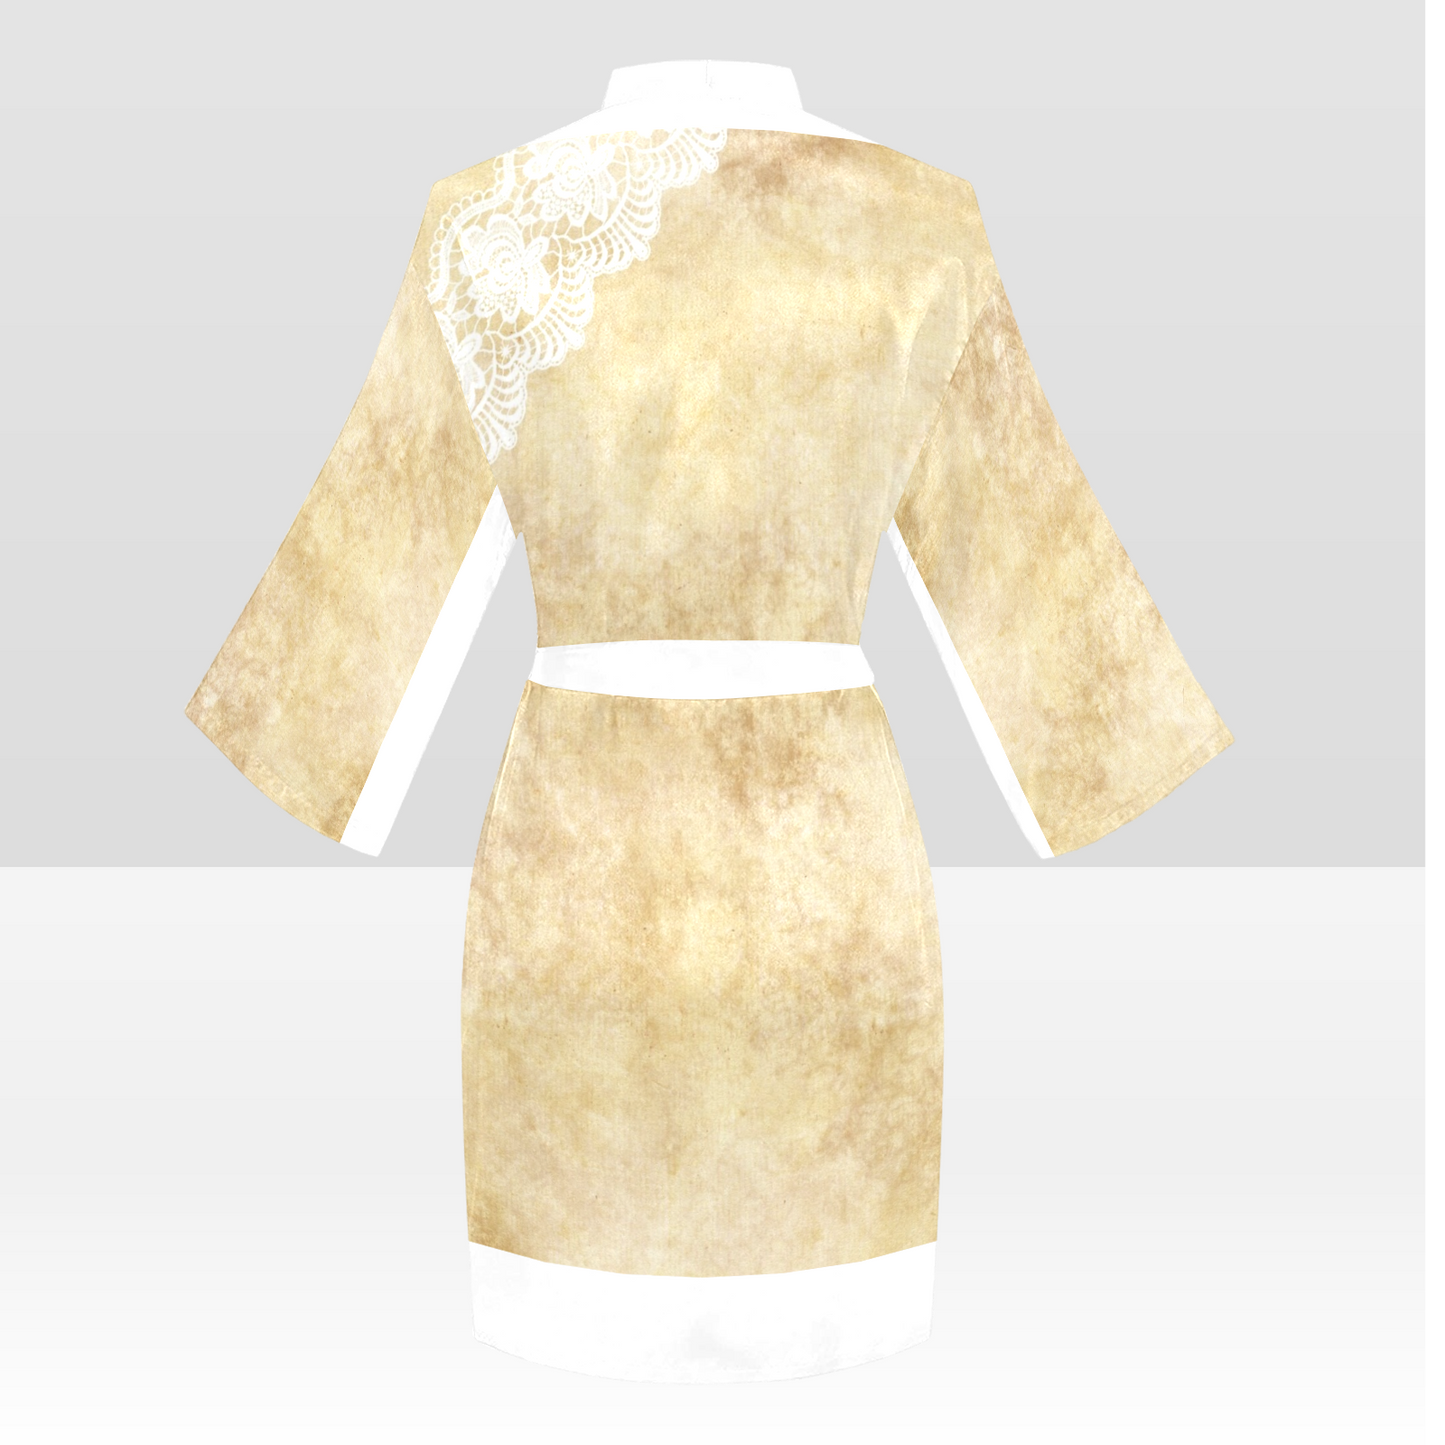 Victorian Lace Kimono Robe, Black or White Trim, Sizes XS to 2XL, Design 29